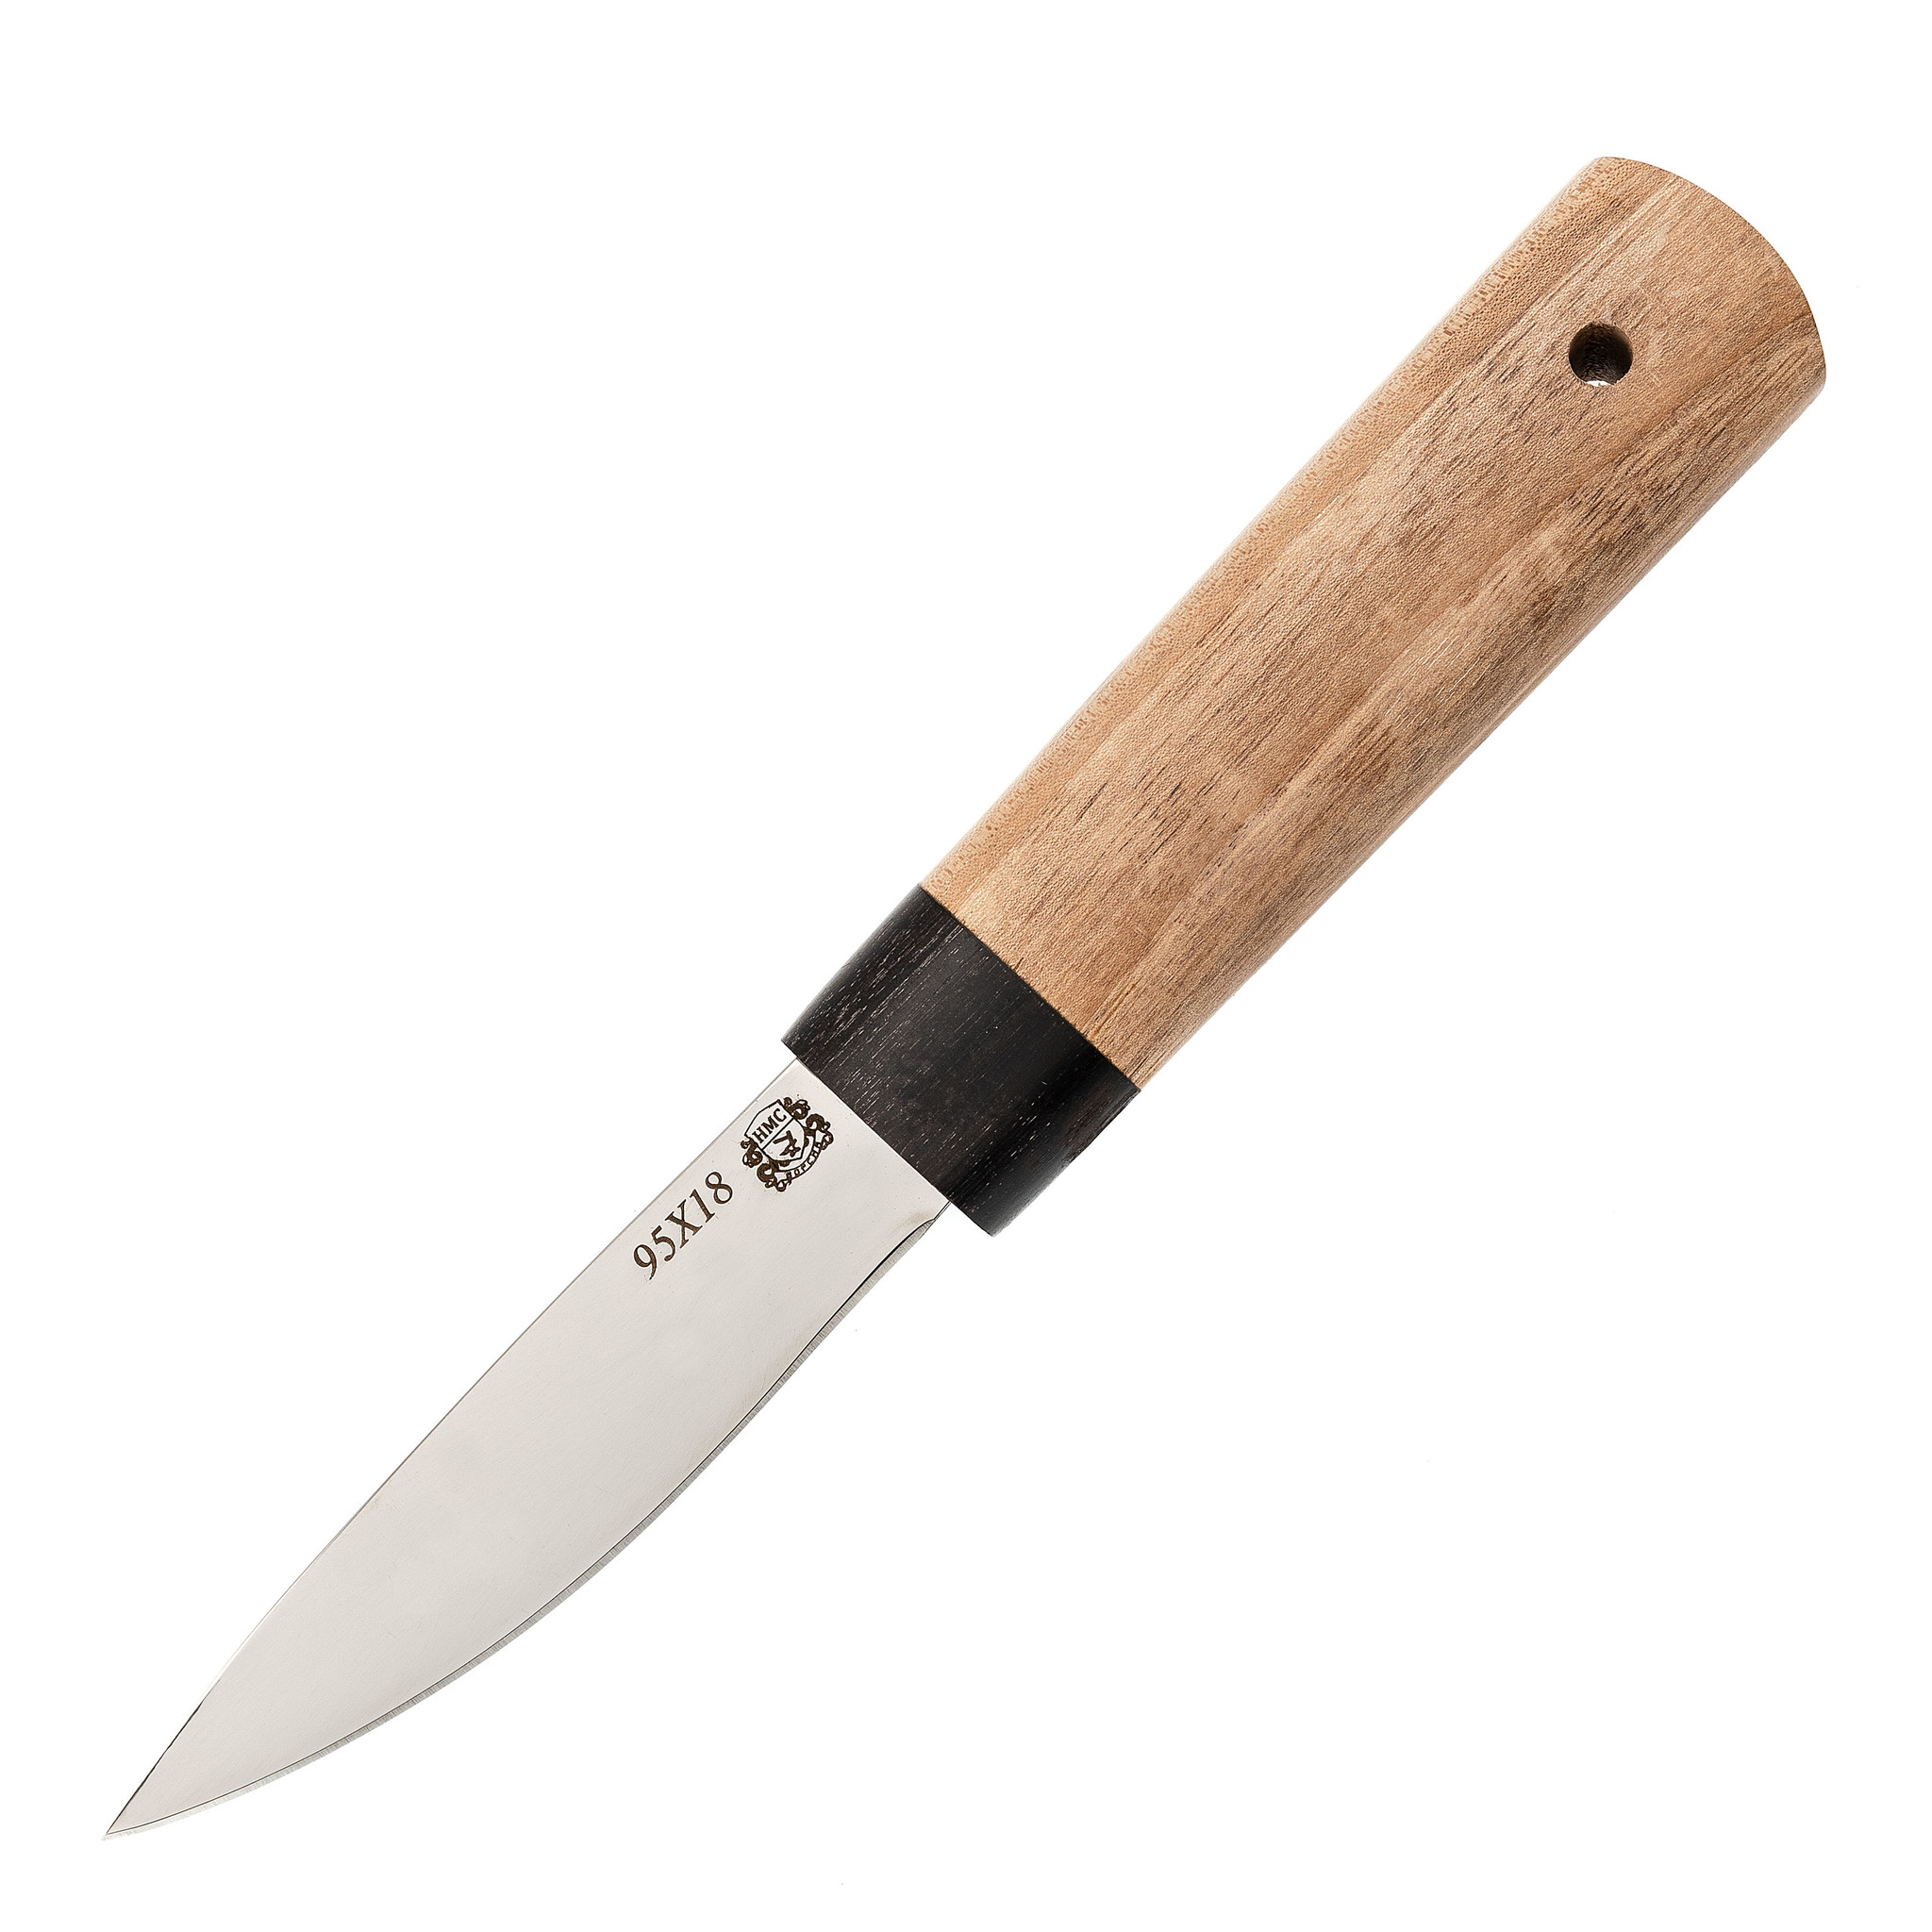 Нож Якутский средний, 95Х18